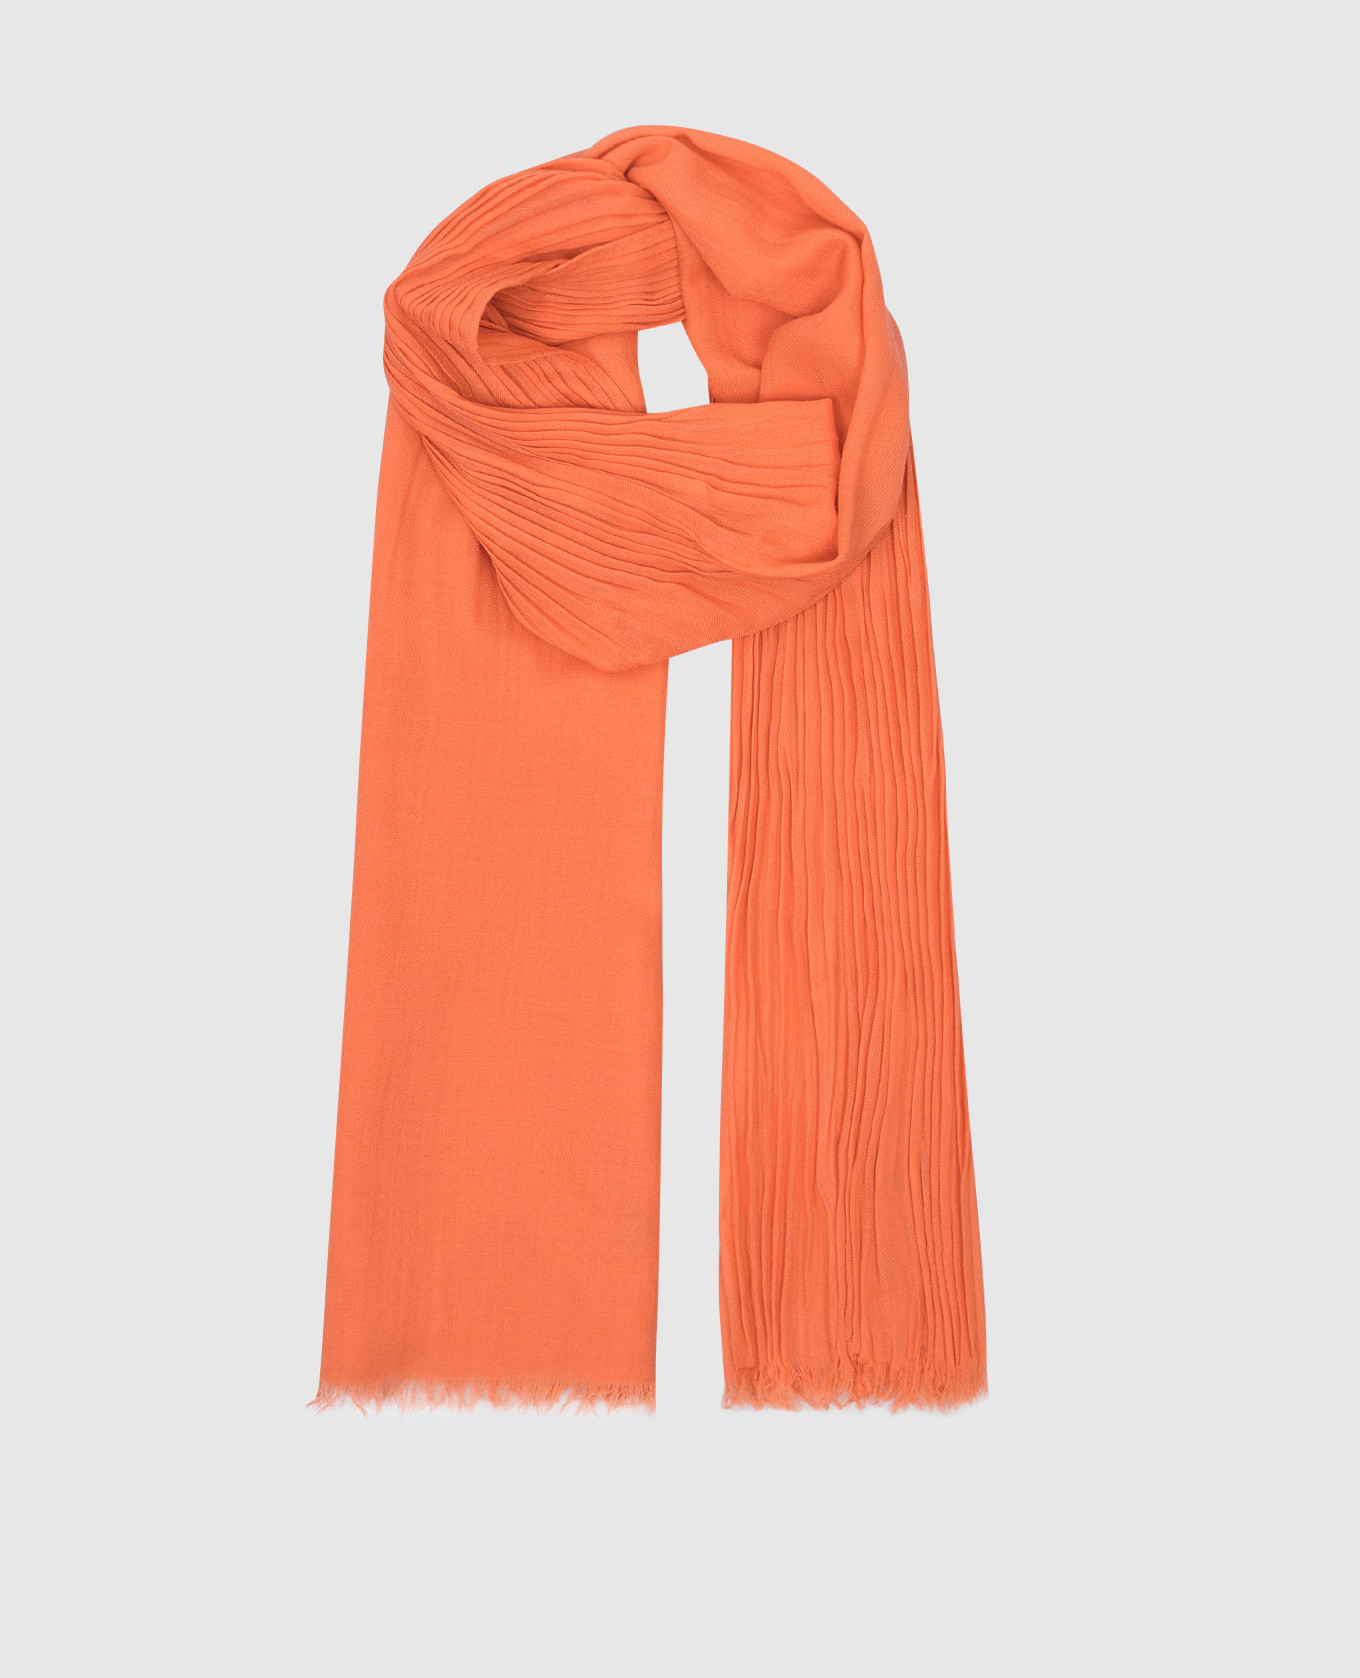 Оранжевый шарф из кашемира и шелка с писем.